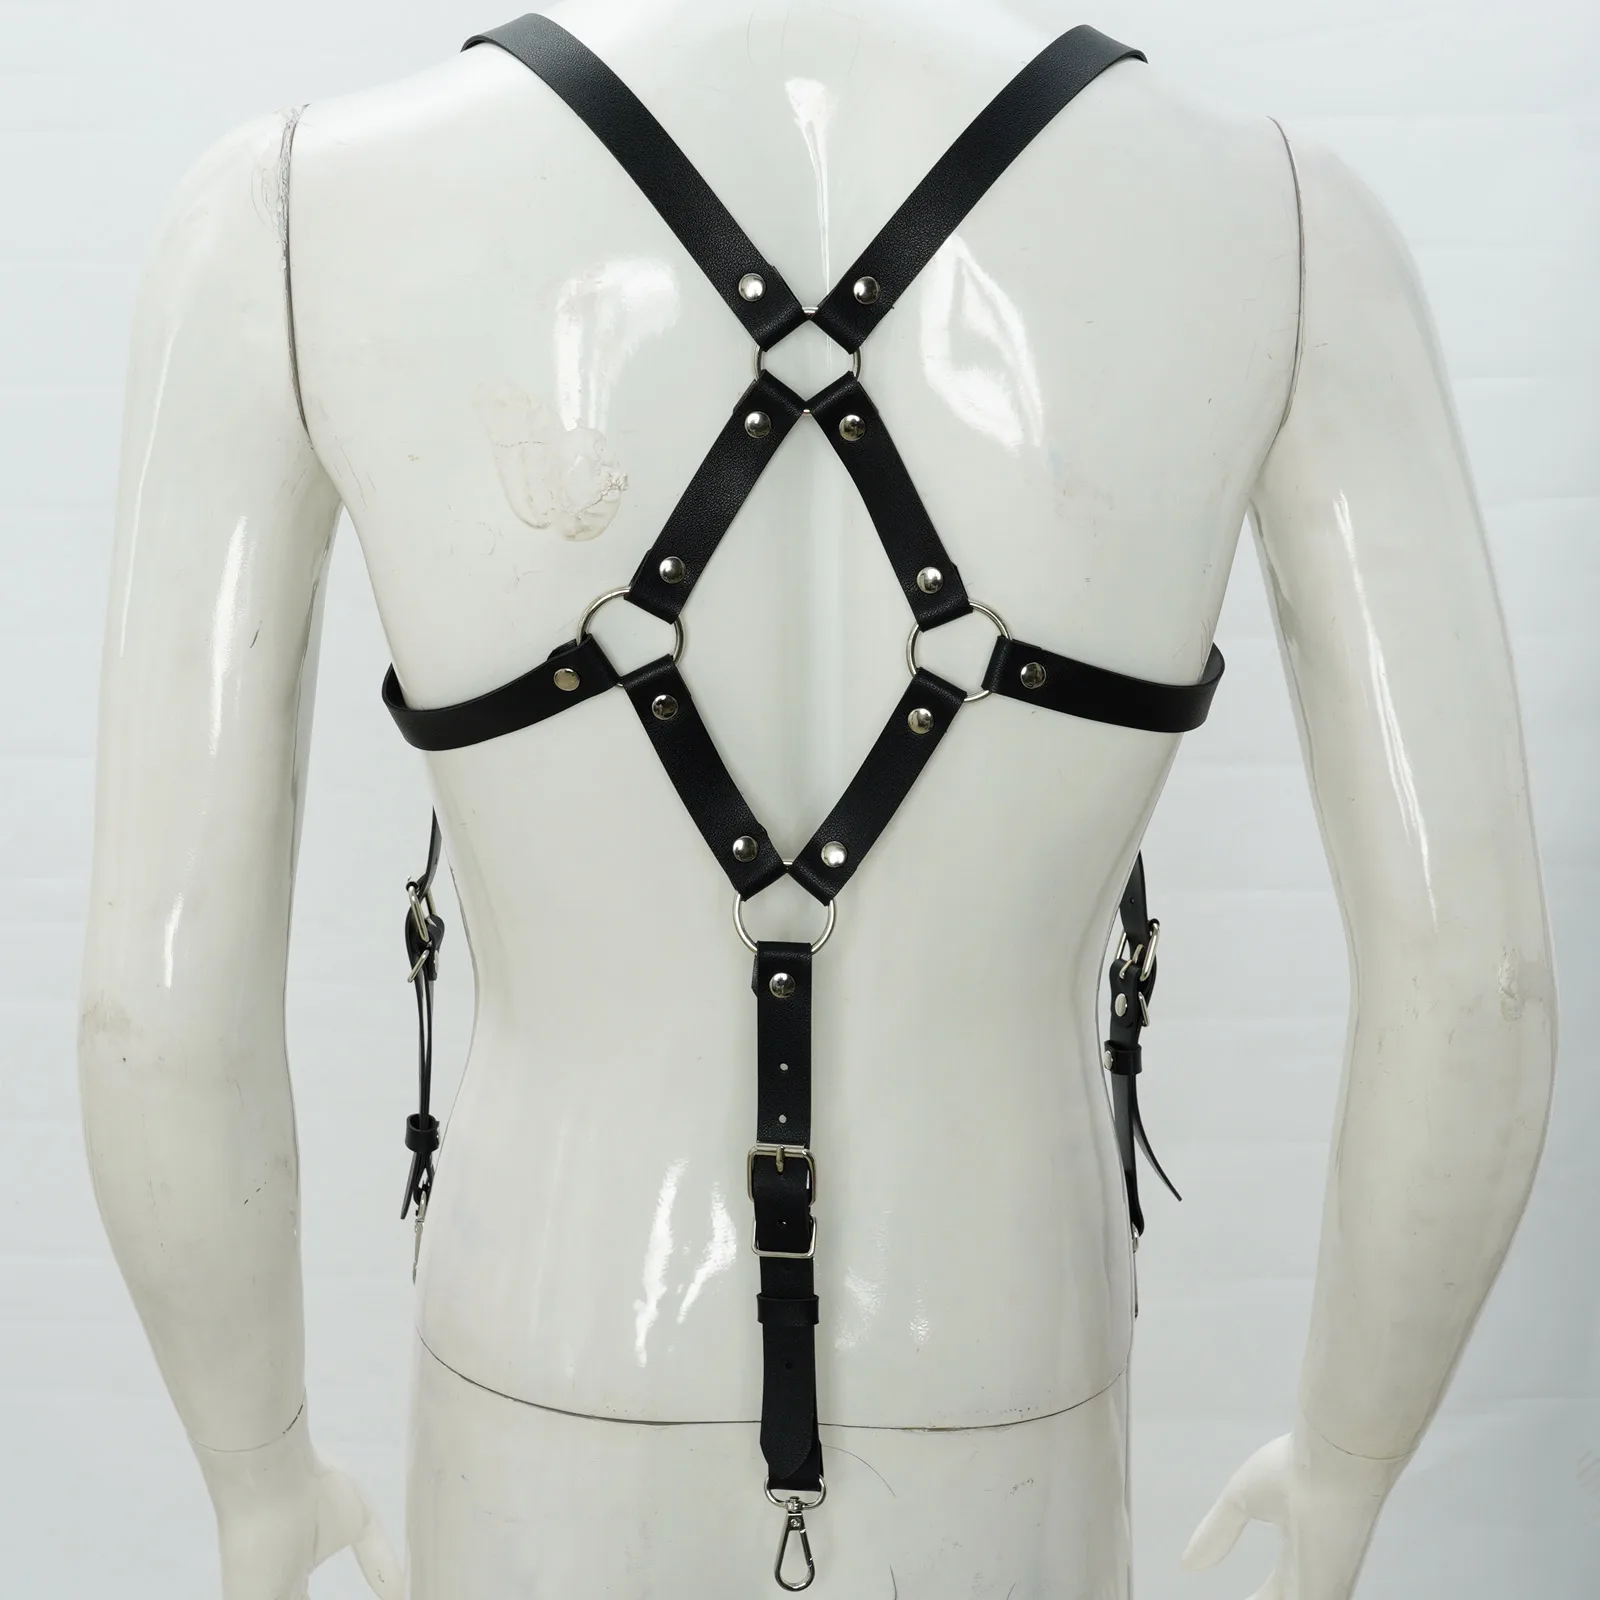 

Mens Suspender Body Chest Harness Strap Adjustable Leather Gentleman Waist Belt Punk Costume Rivets O-Ring Decor Shoulder Straps